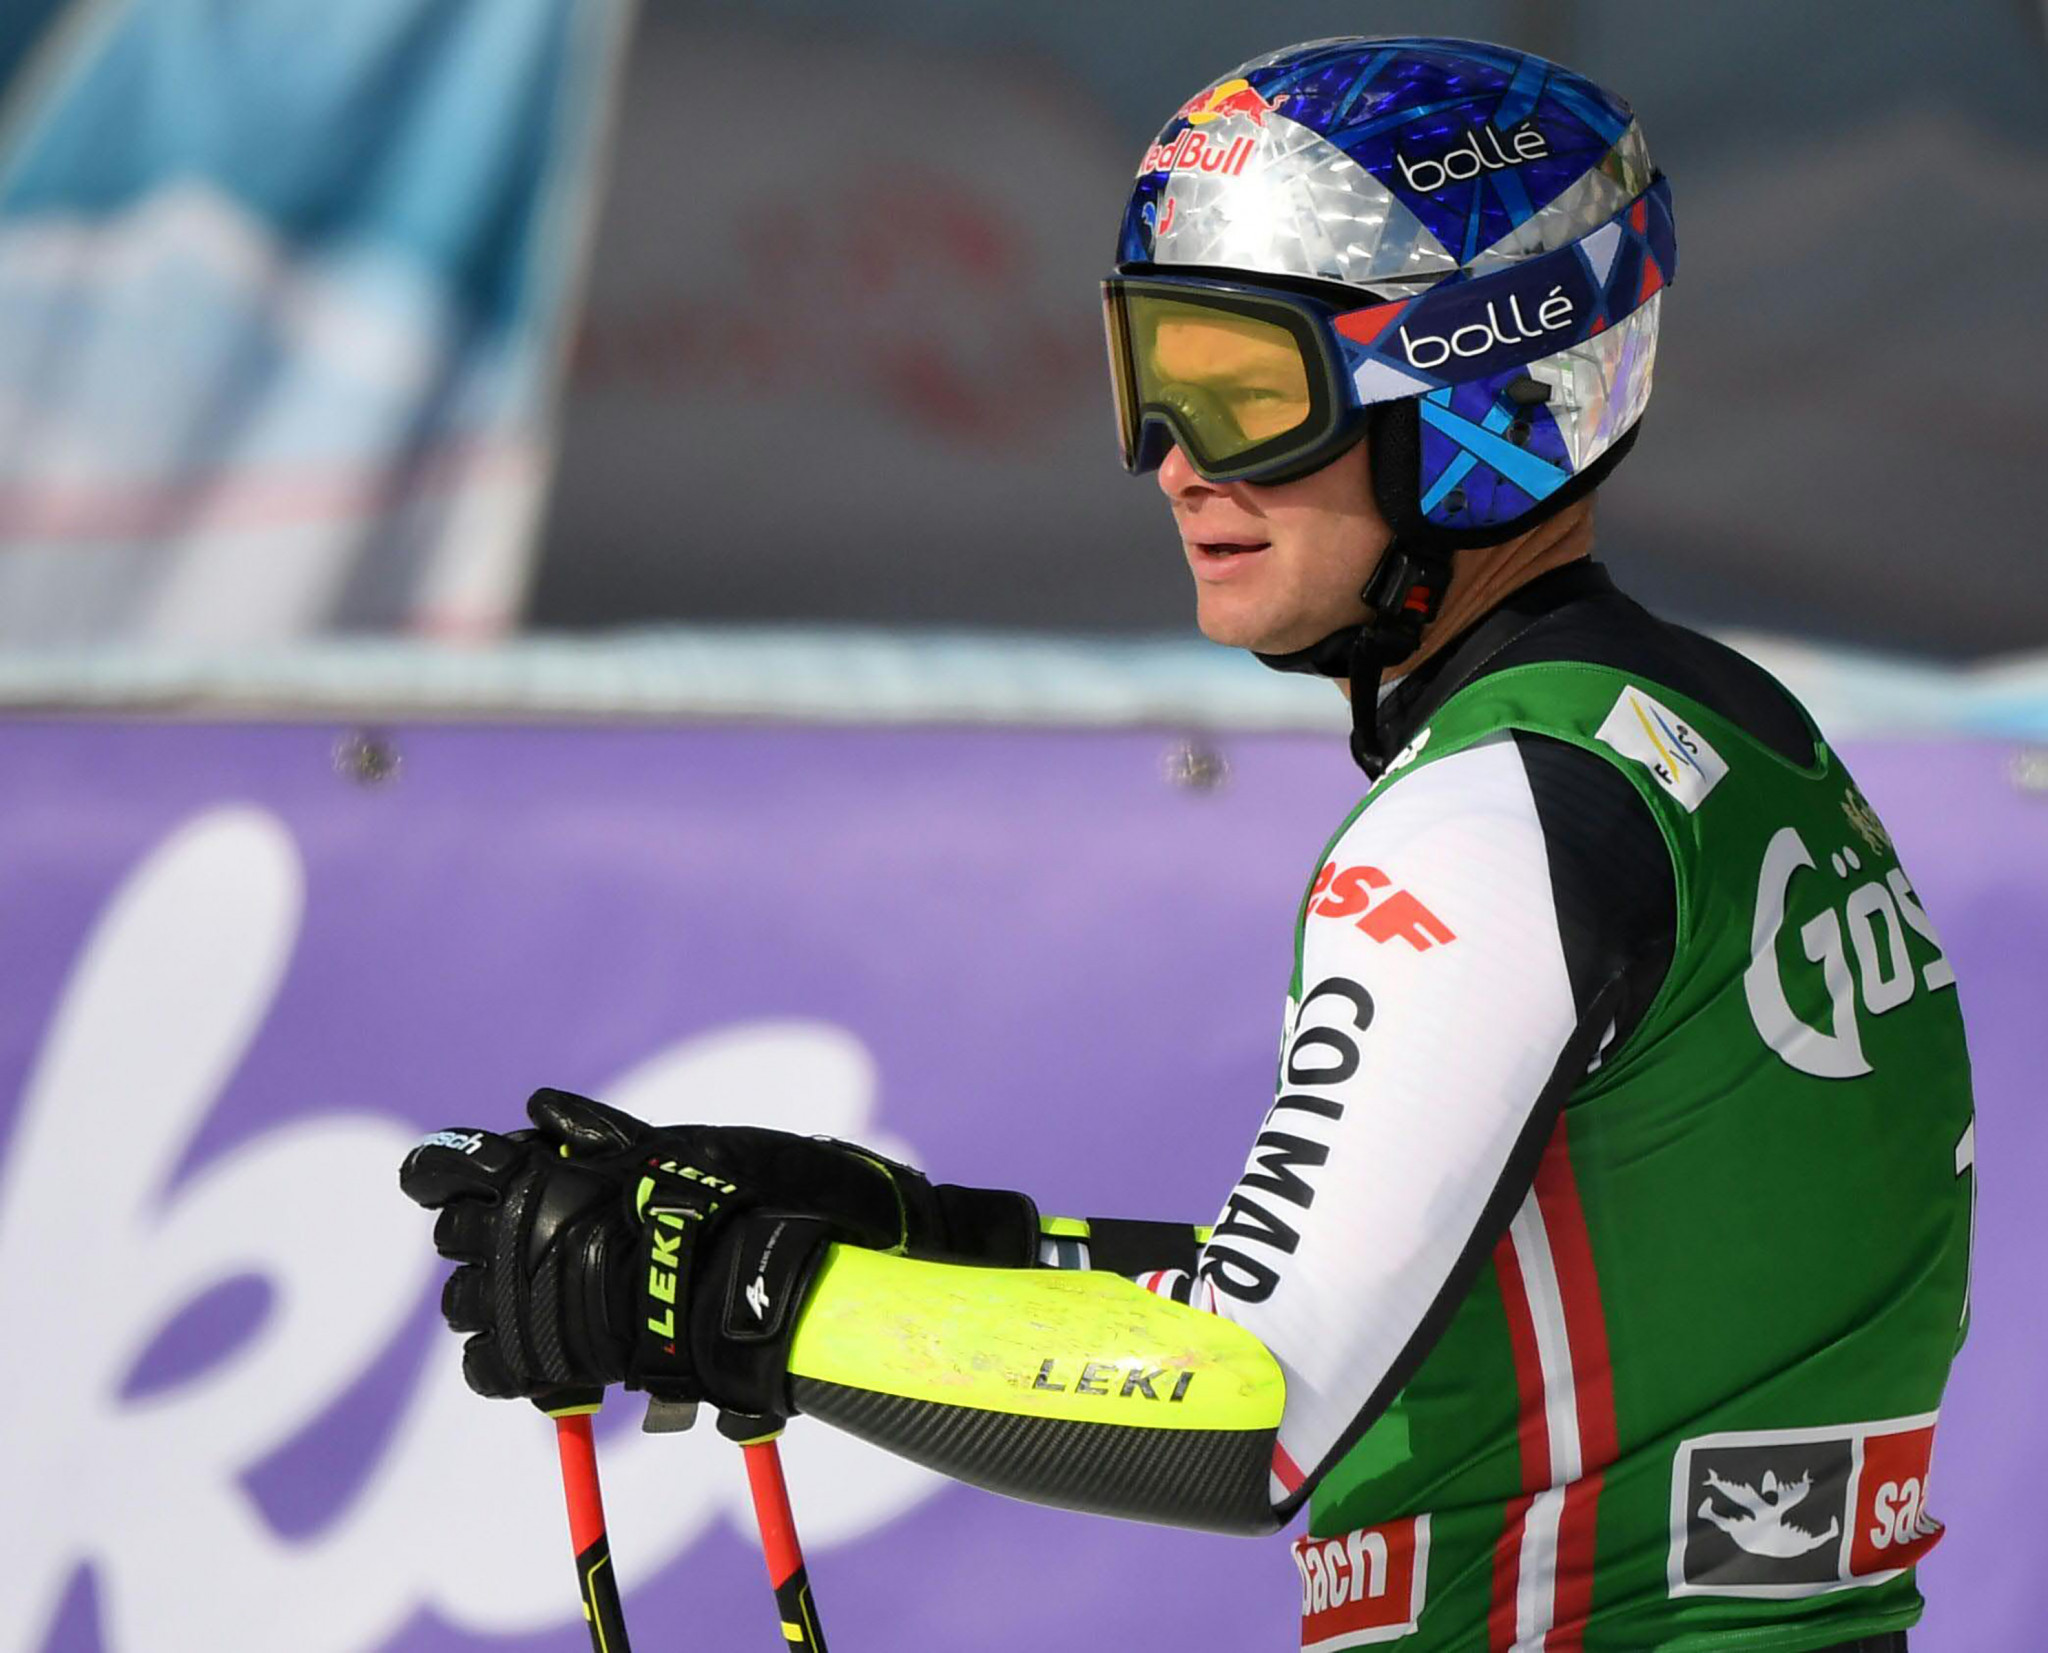 Alexis Pinturault est actuellement en tête du classement général et de la Coupe du monde de slalom géant © Getty Images